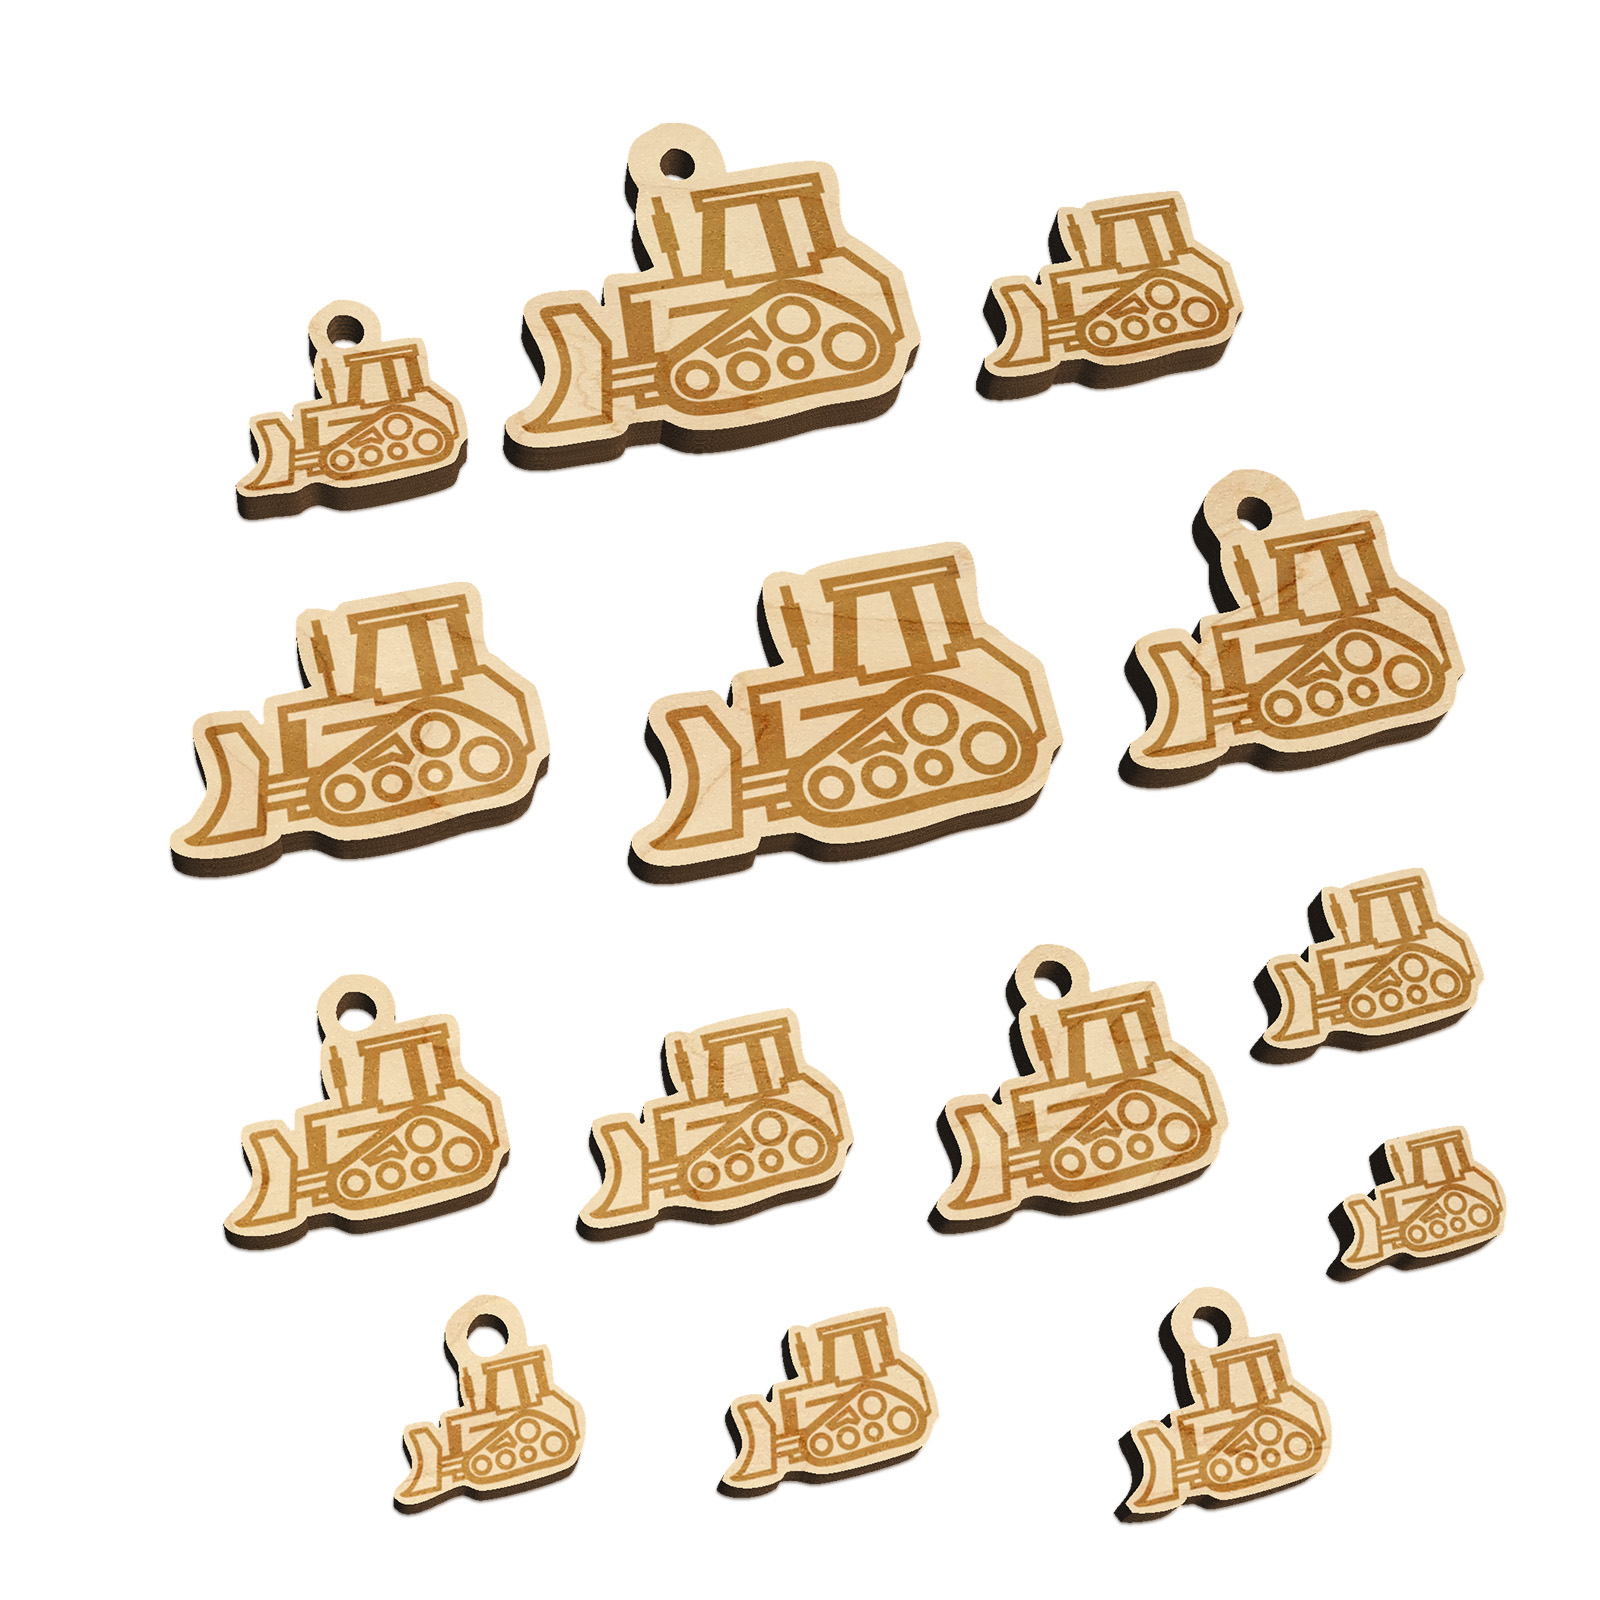 Bulldozer Dozer Construction Vehicle Wood Mini Charms Shapes DIY Craft Jewelry - With Hole - Various Sizes (16pcs) - image 1 of 7